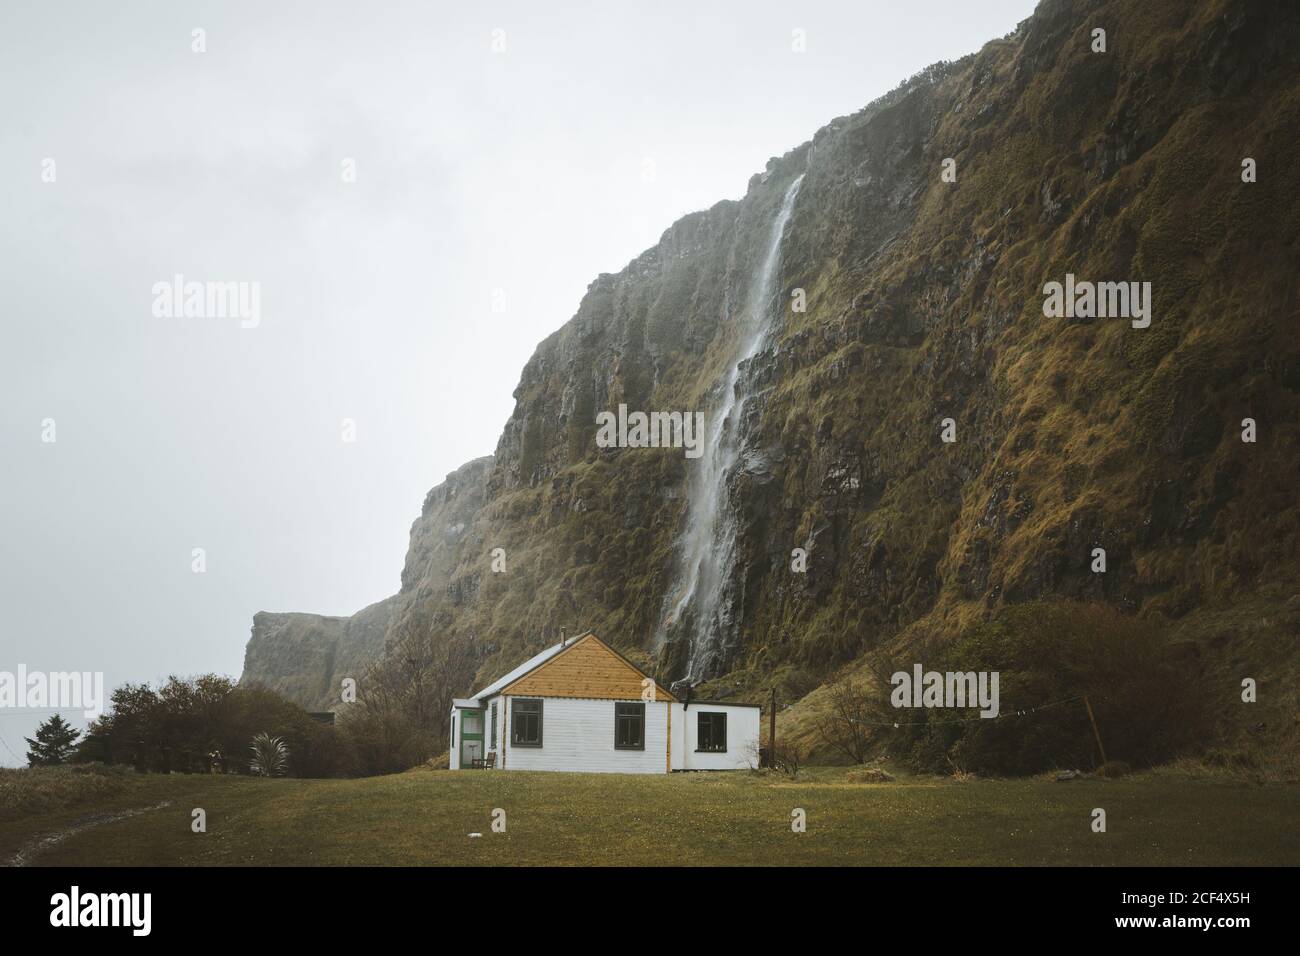 Kleines Landhaus aus Holz mit weißen Wänden und gelbem Giebeldach Dach auf grüner Wiese am Fuß der Klippe mit Wasserfall gegen grau bewölkten Himmel im Frühling Tag im Norden Irland Stockfoto